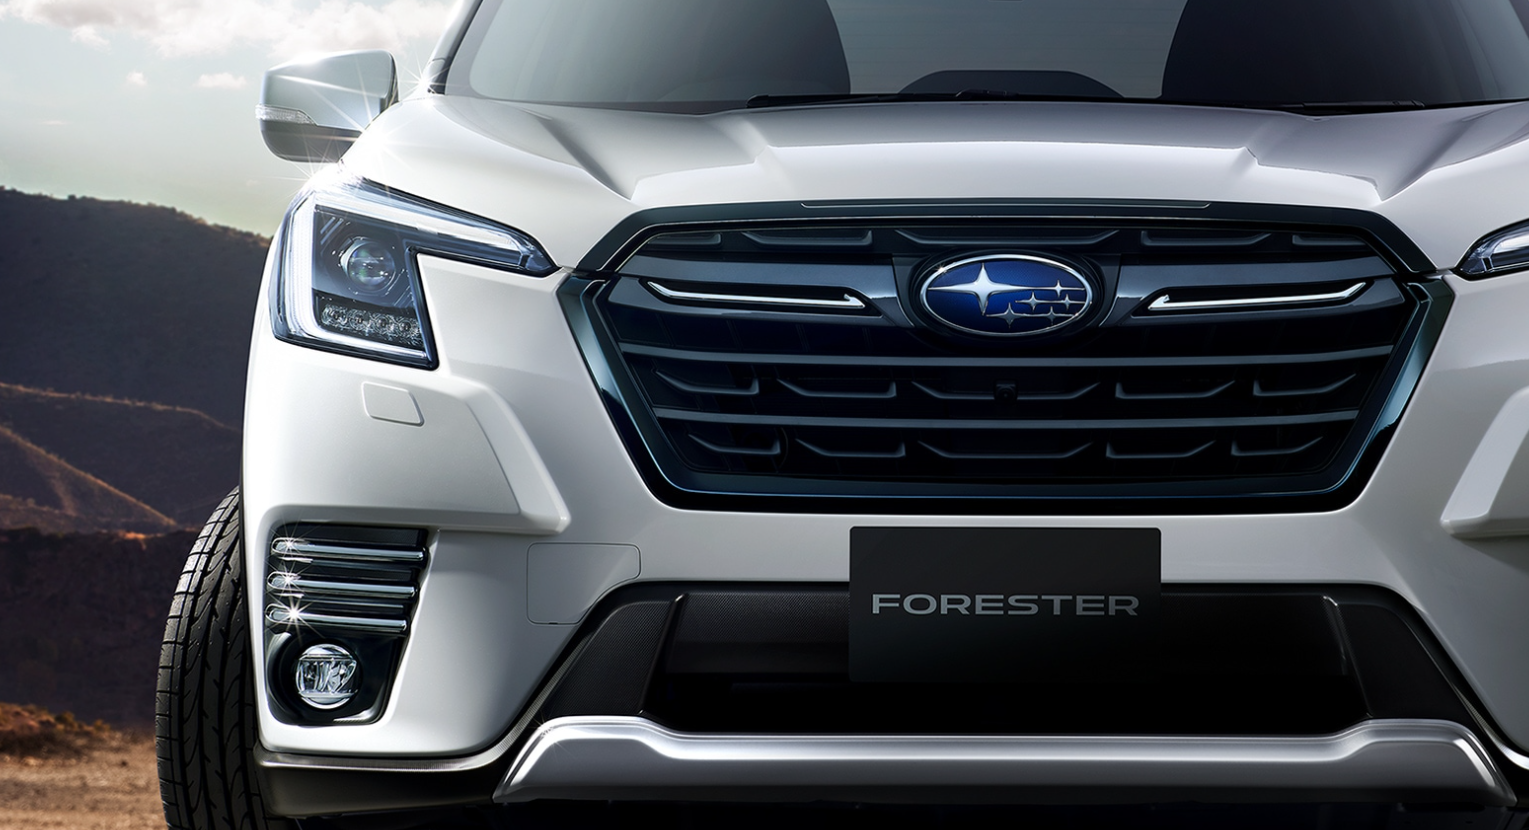 Subaru Forester получил рестайлинг пятого поколения спустя четыре года после выхода